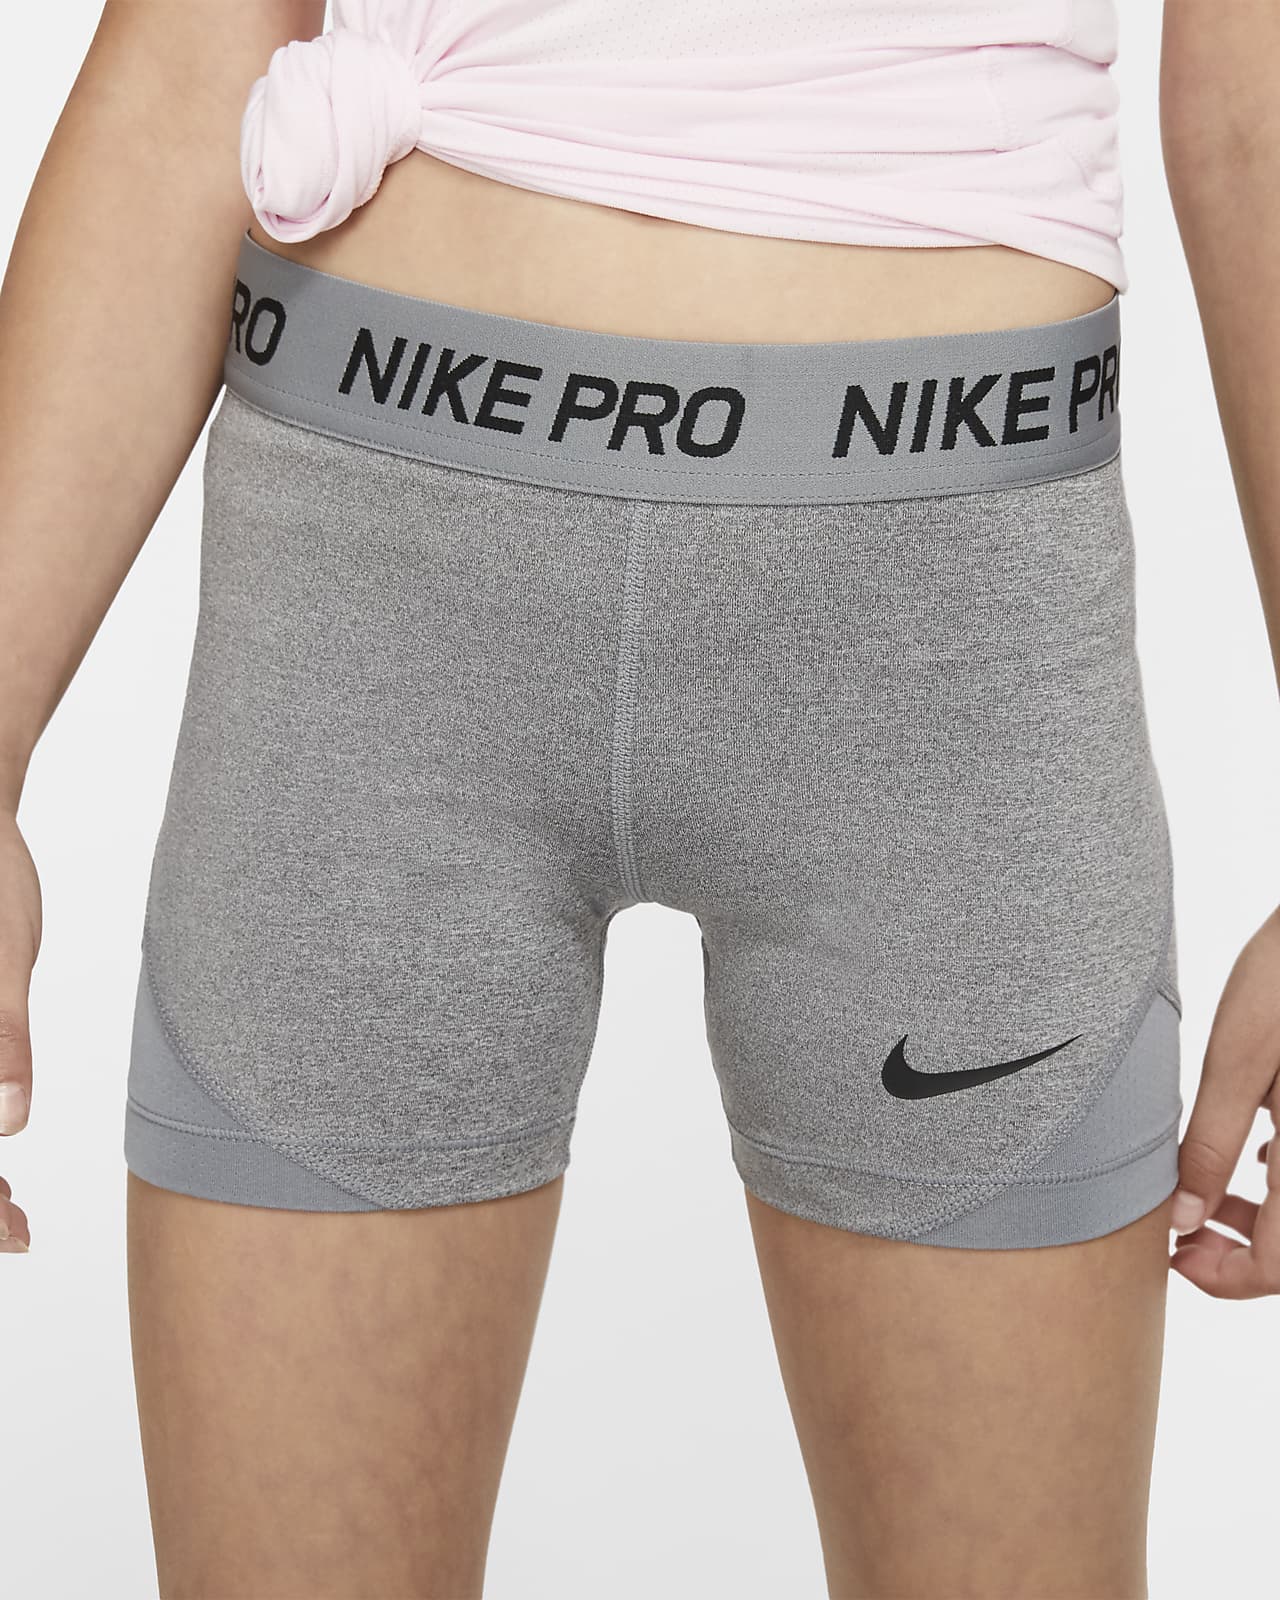 nike pro underwear women's